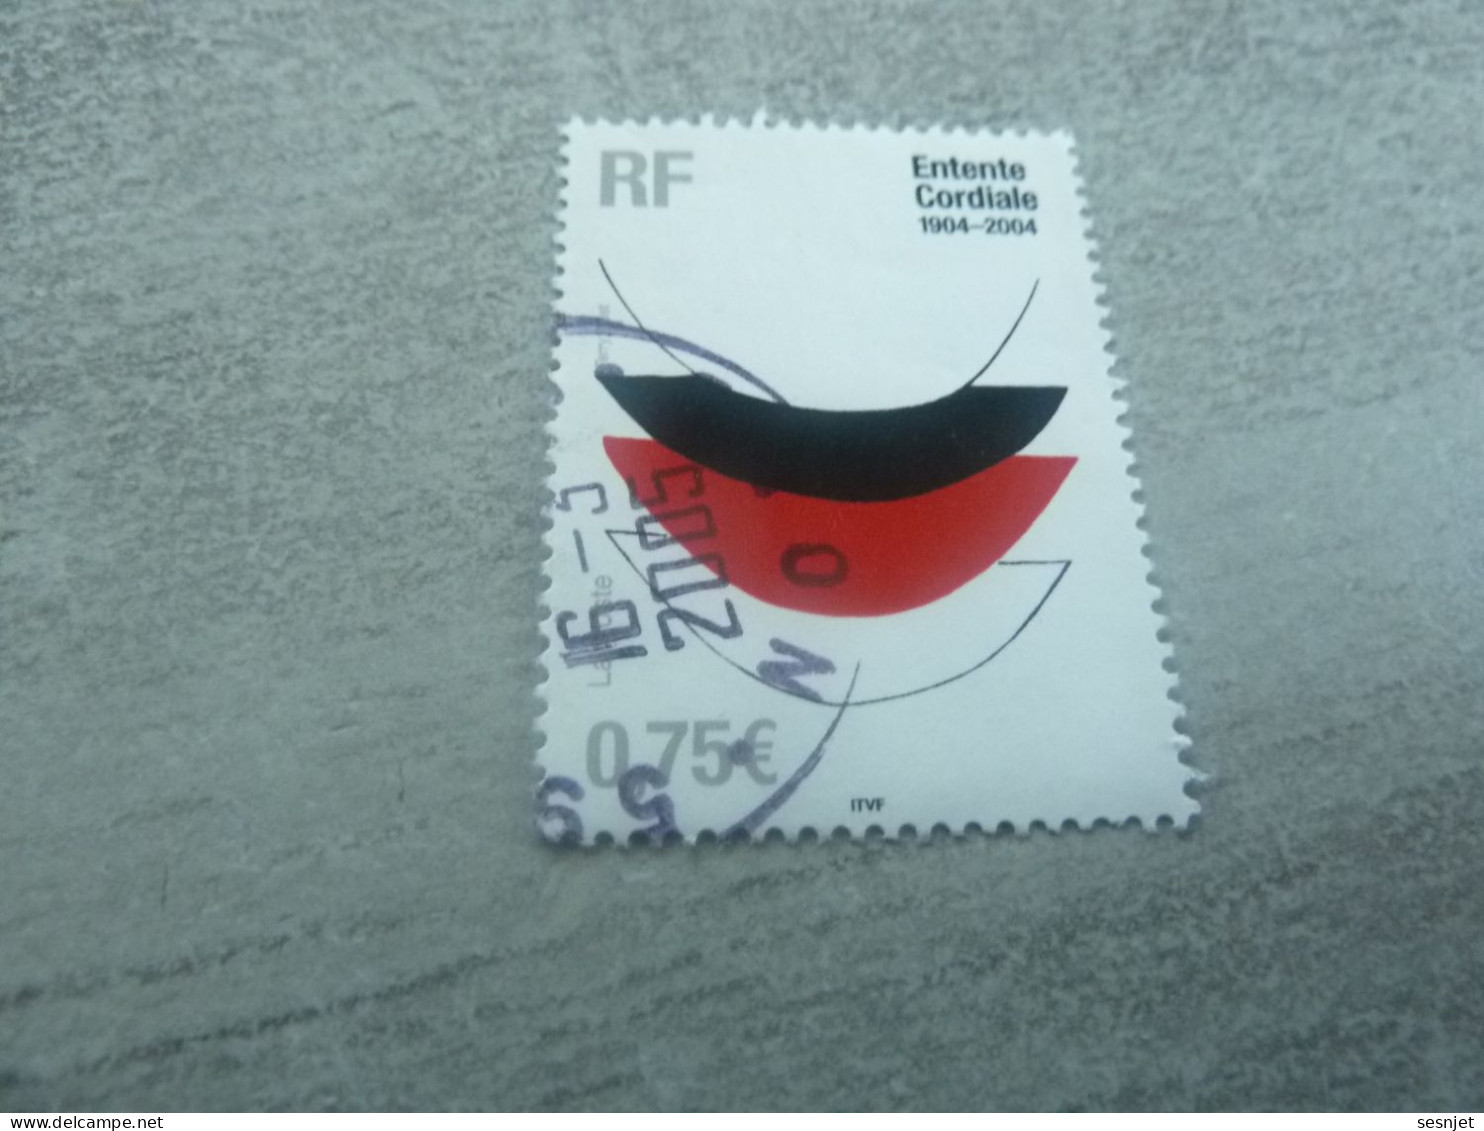 Centenaire De L'Entente Cordiale - Lace I (Trial Proof) - 0.75 € - Yt 3658 - Multicolore - Oblitéré - Année 2004 - - Used Stamps